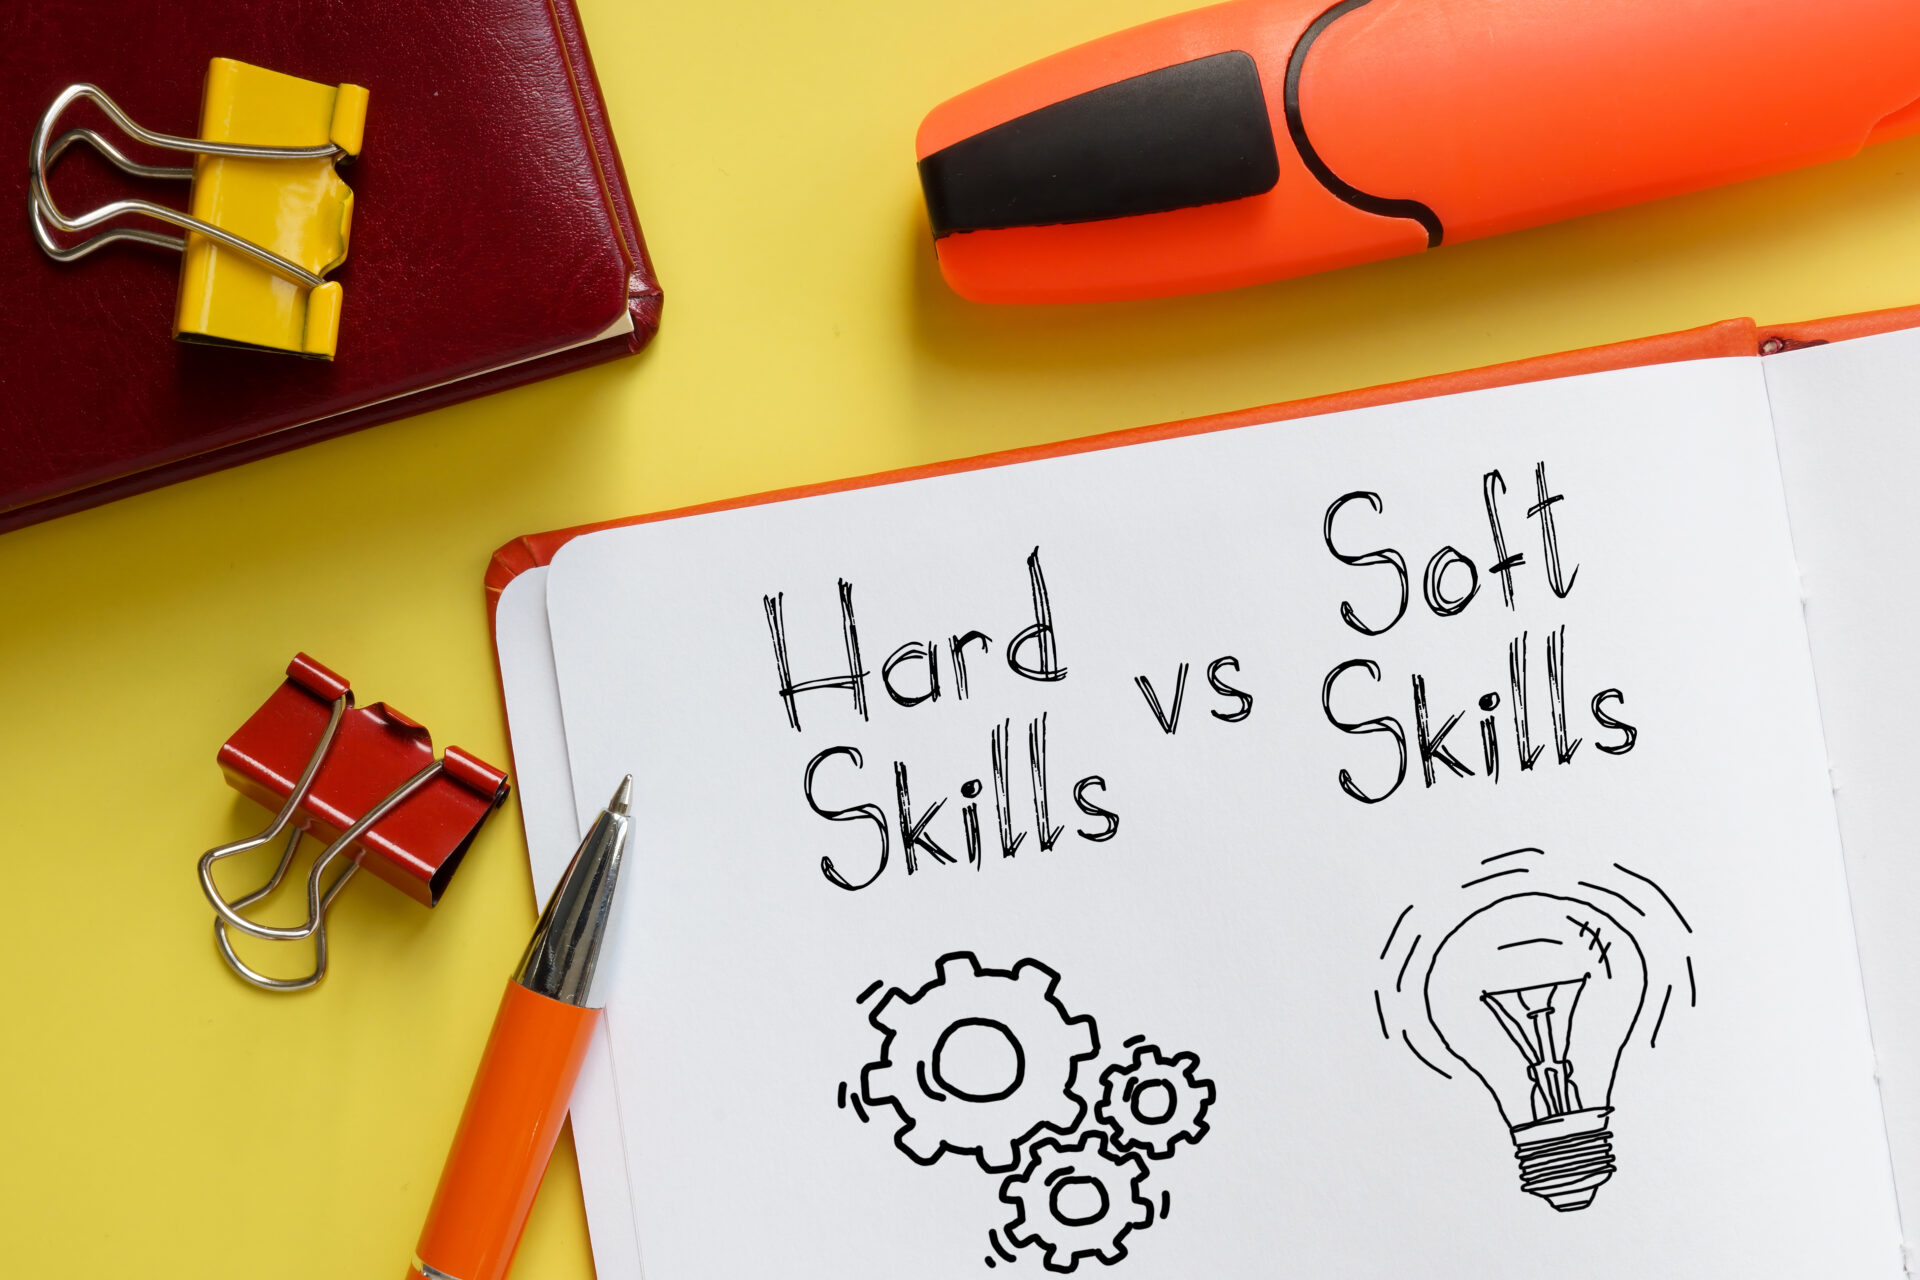 Soft чи Hard skills? Найважливіші навички проджект-менеджера